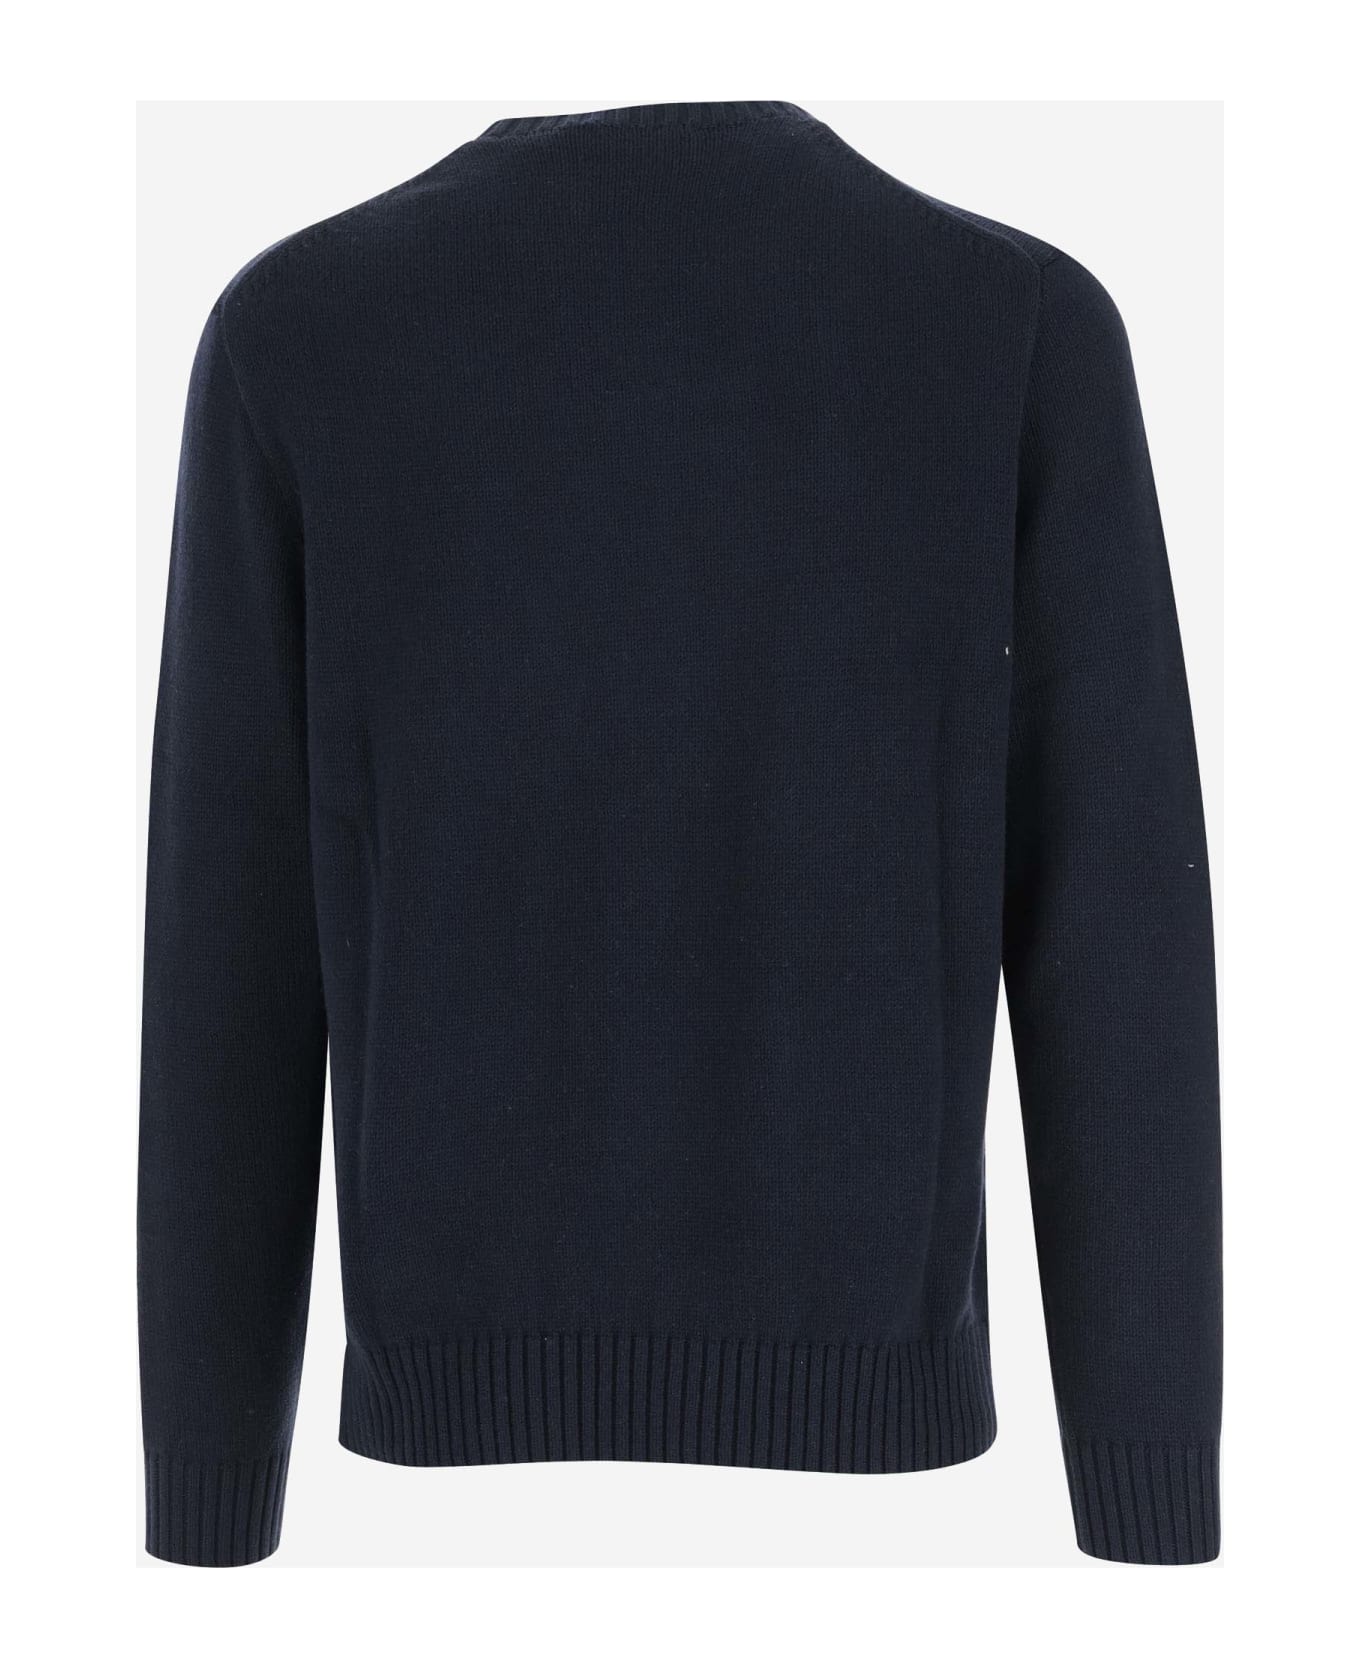 Ralph Lauren Cotton Polo Bear Sweater - Blue